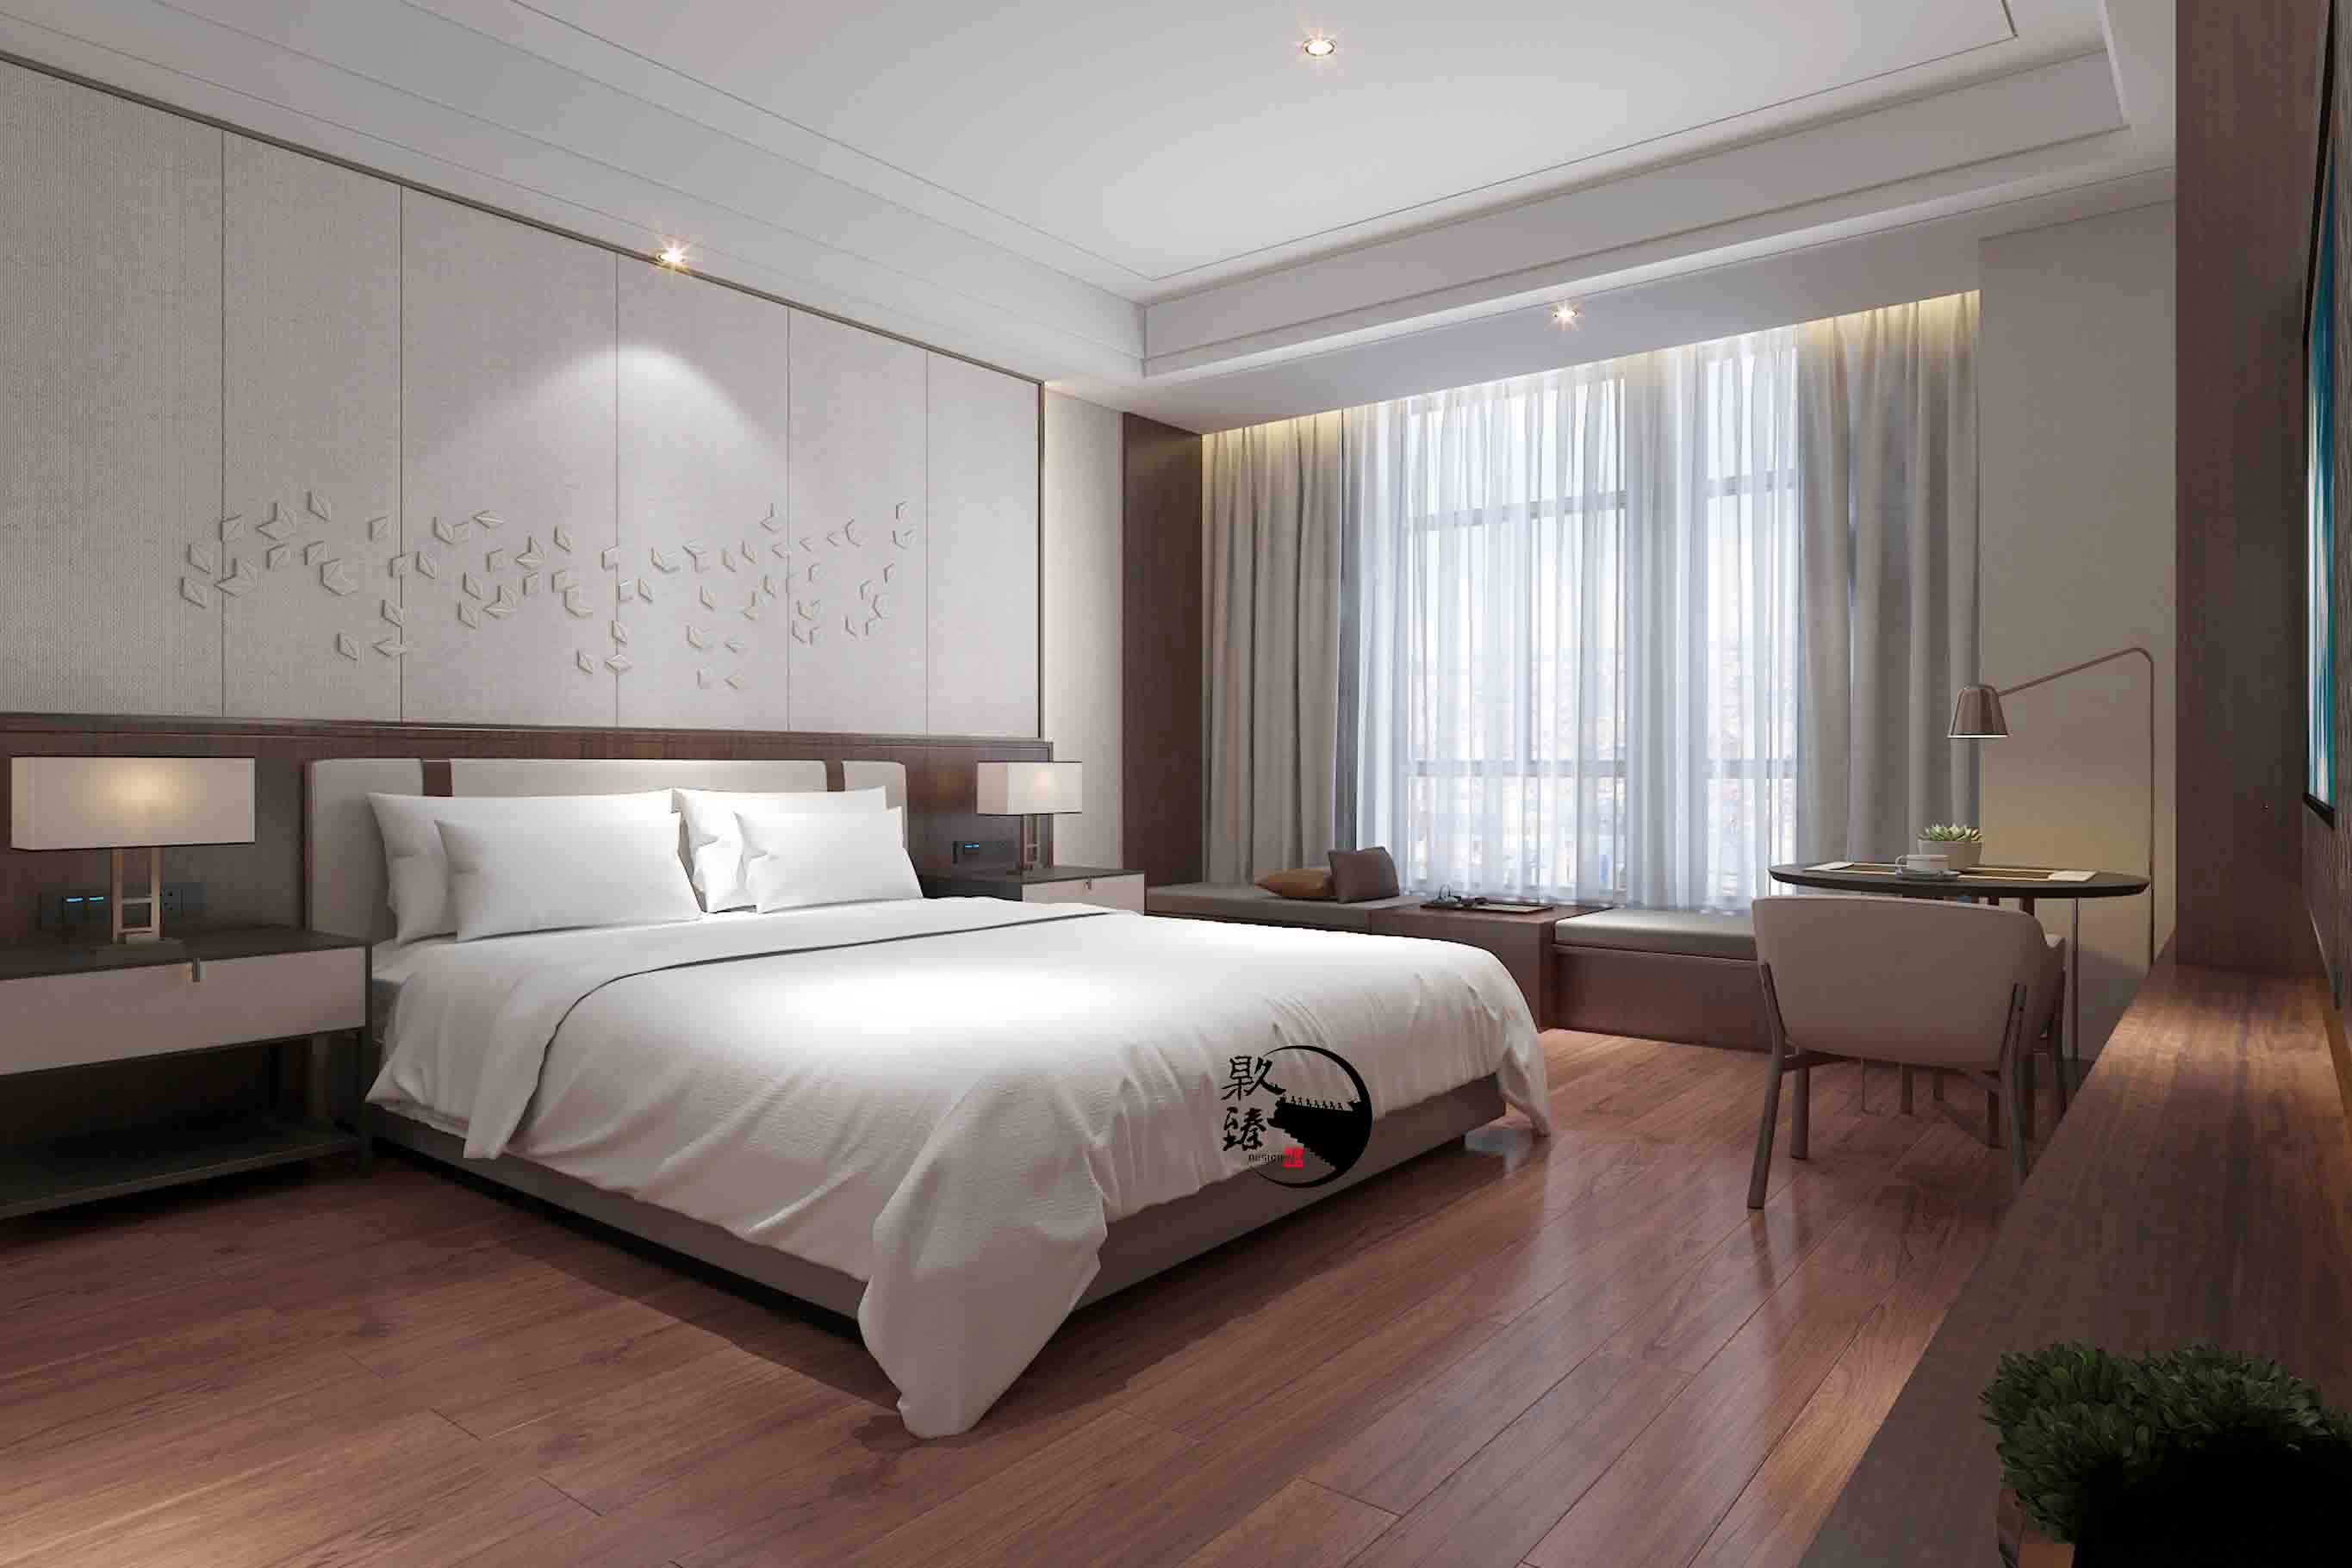 西安米素酒店设计|满足客户对舒适和安静的需求